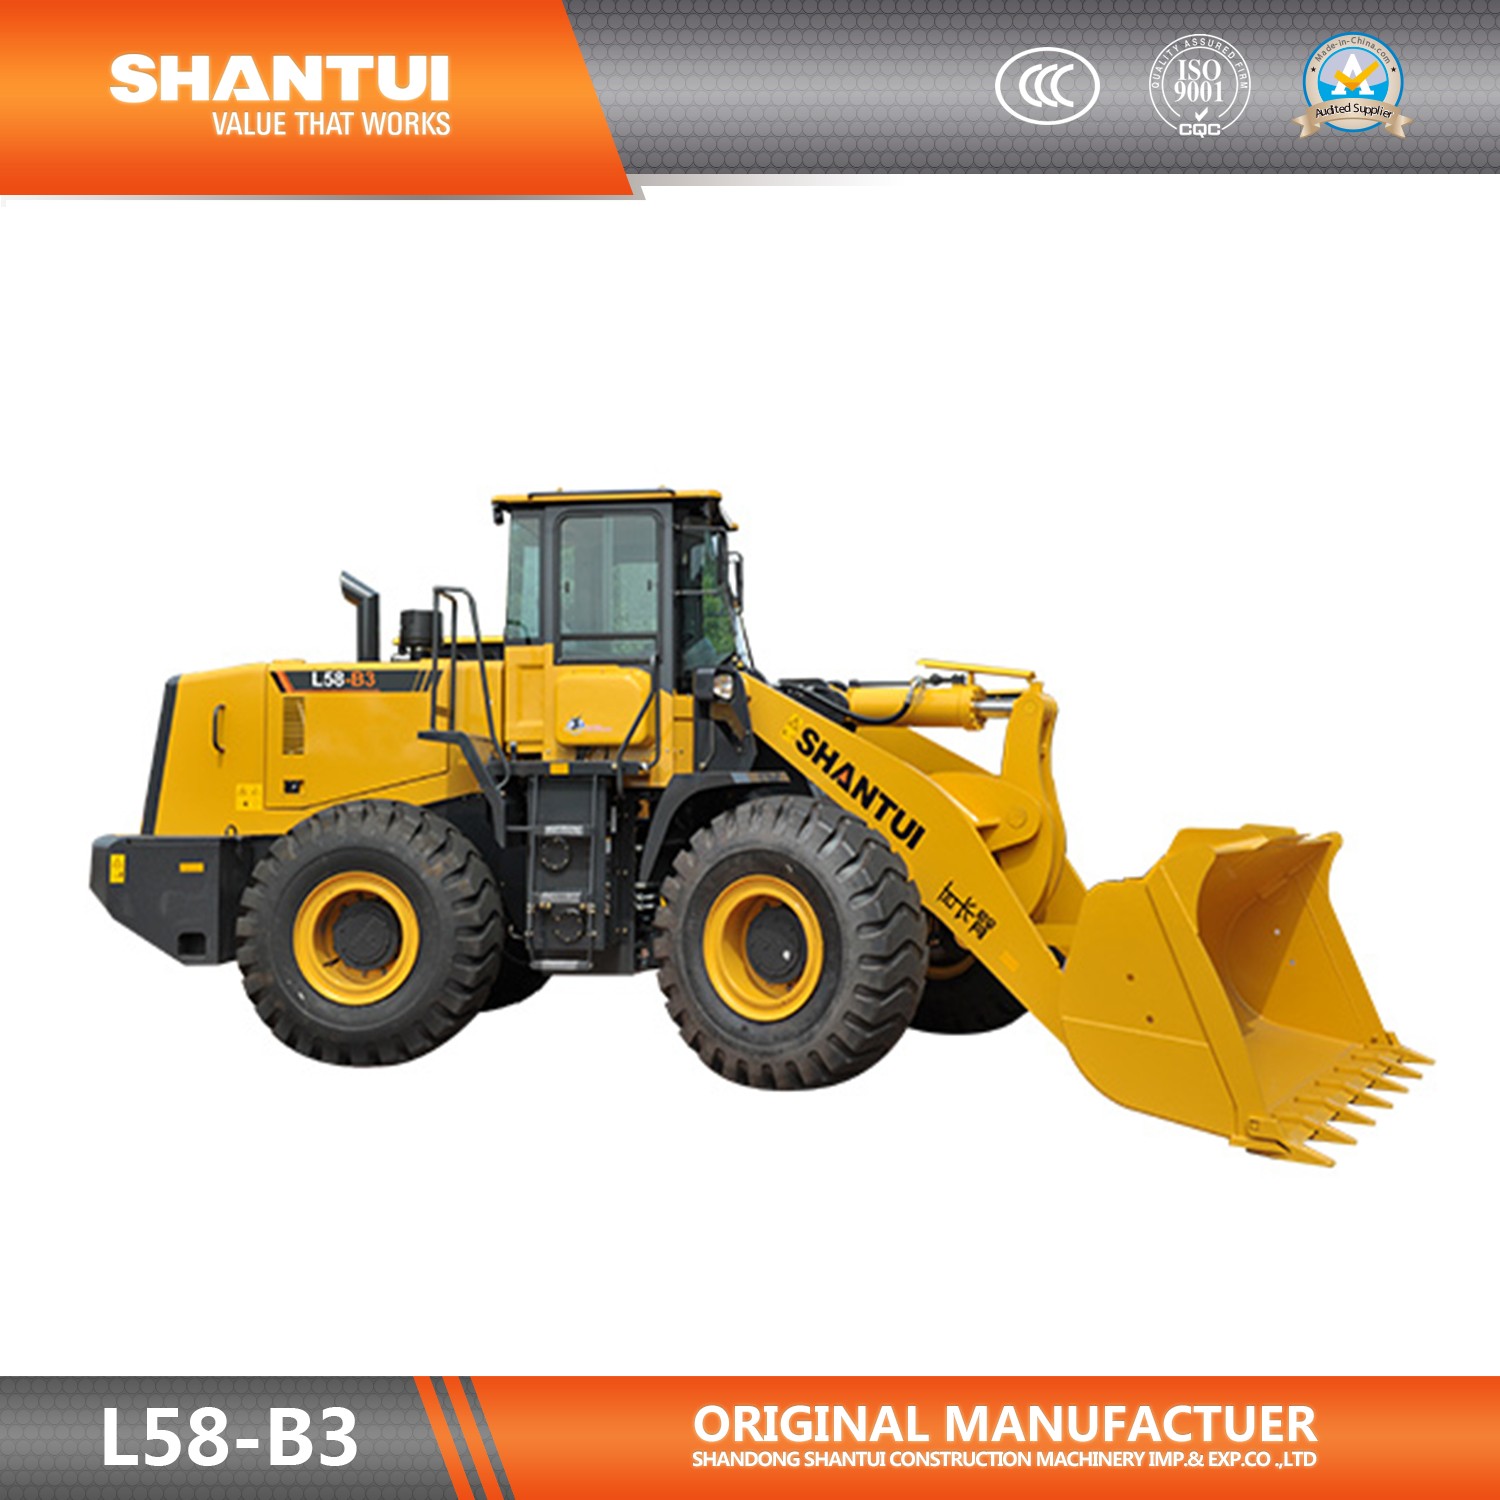 Shantui 5 Tons Hydraulic Wheel Loader L58-B3